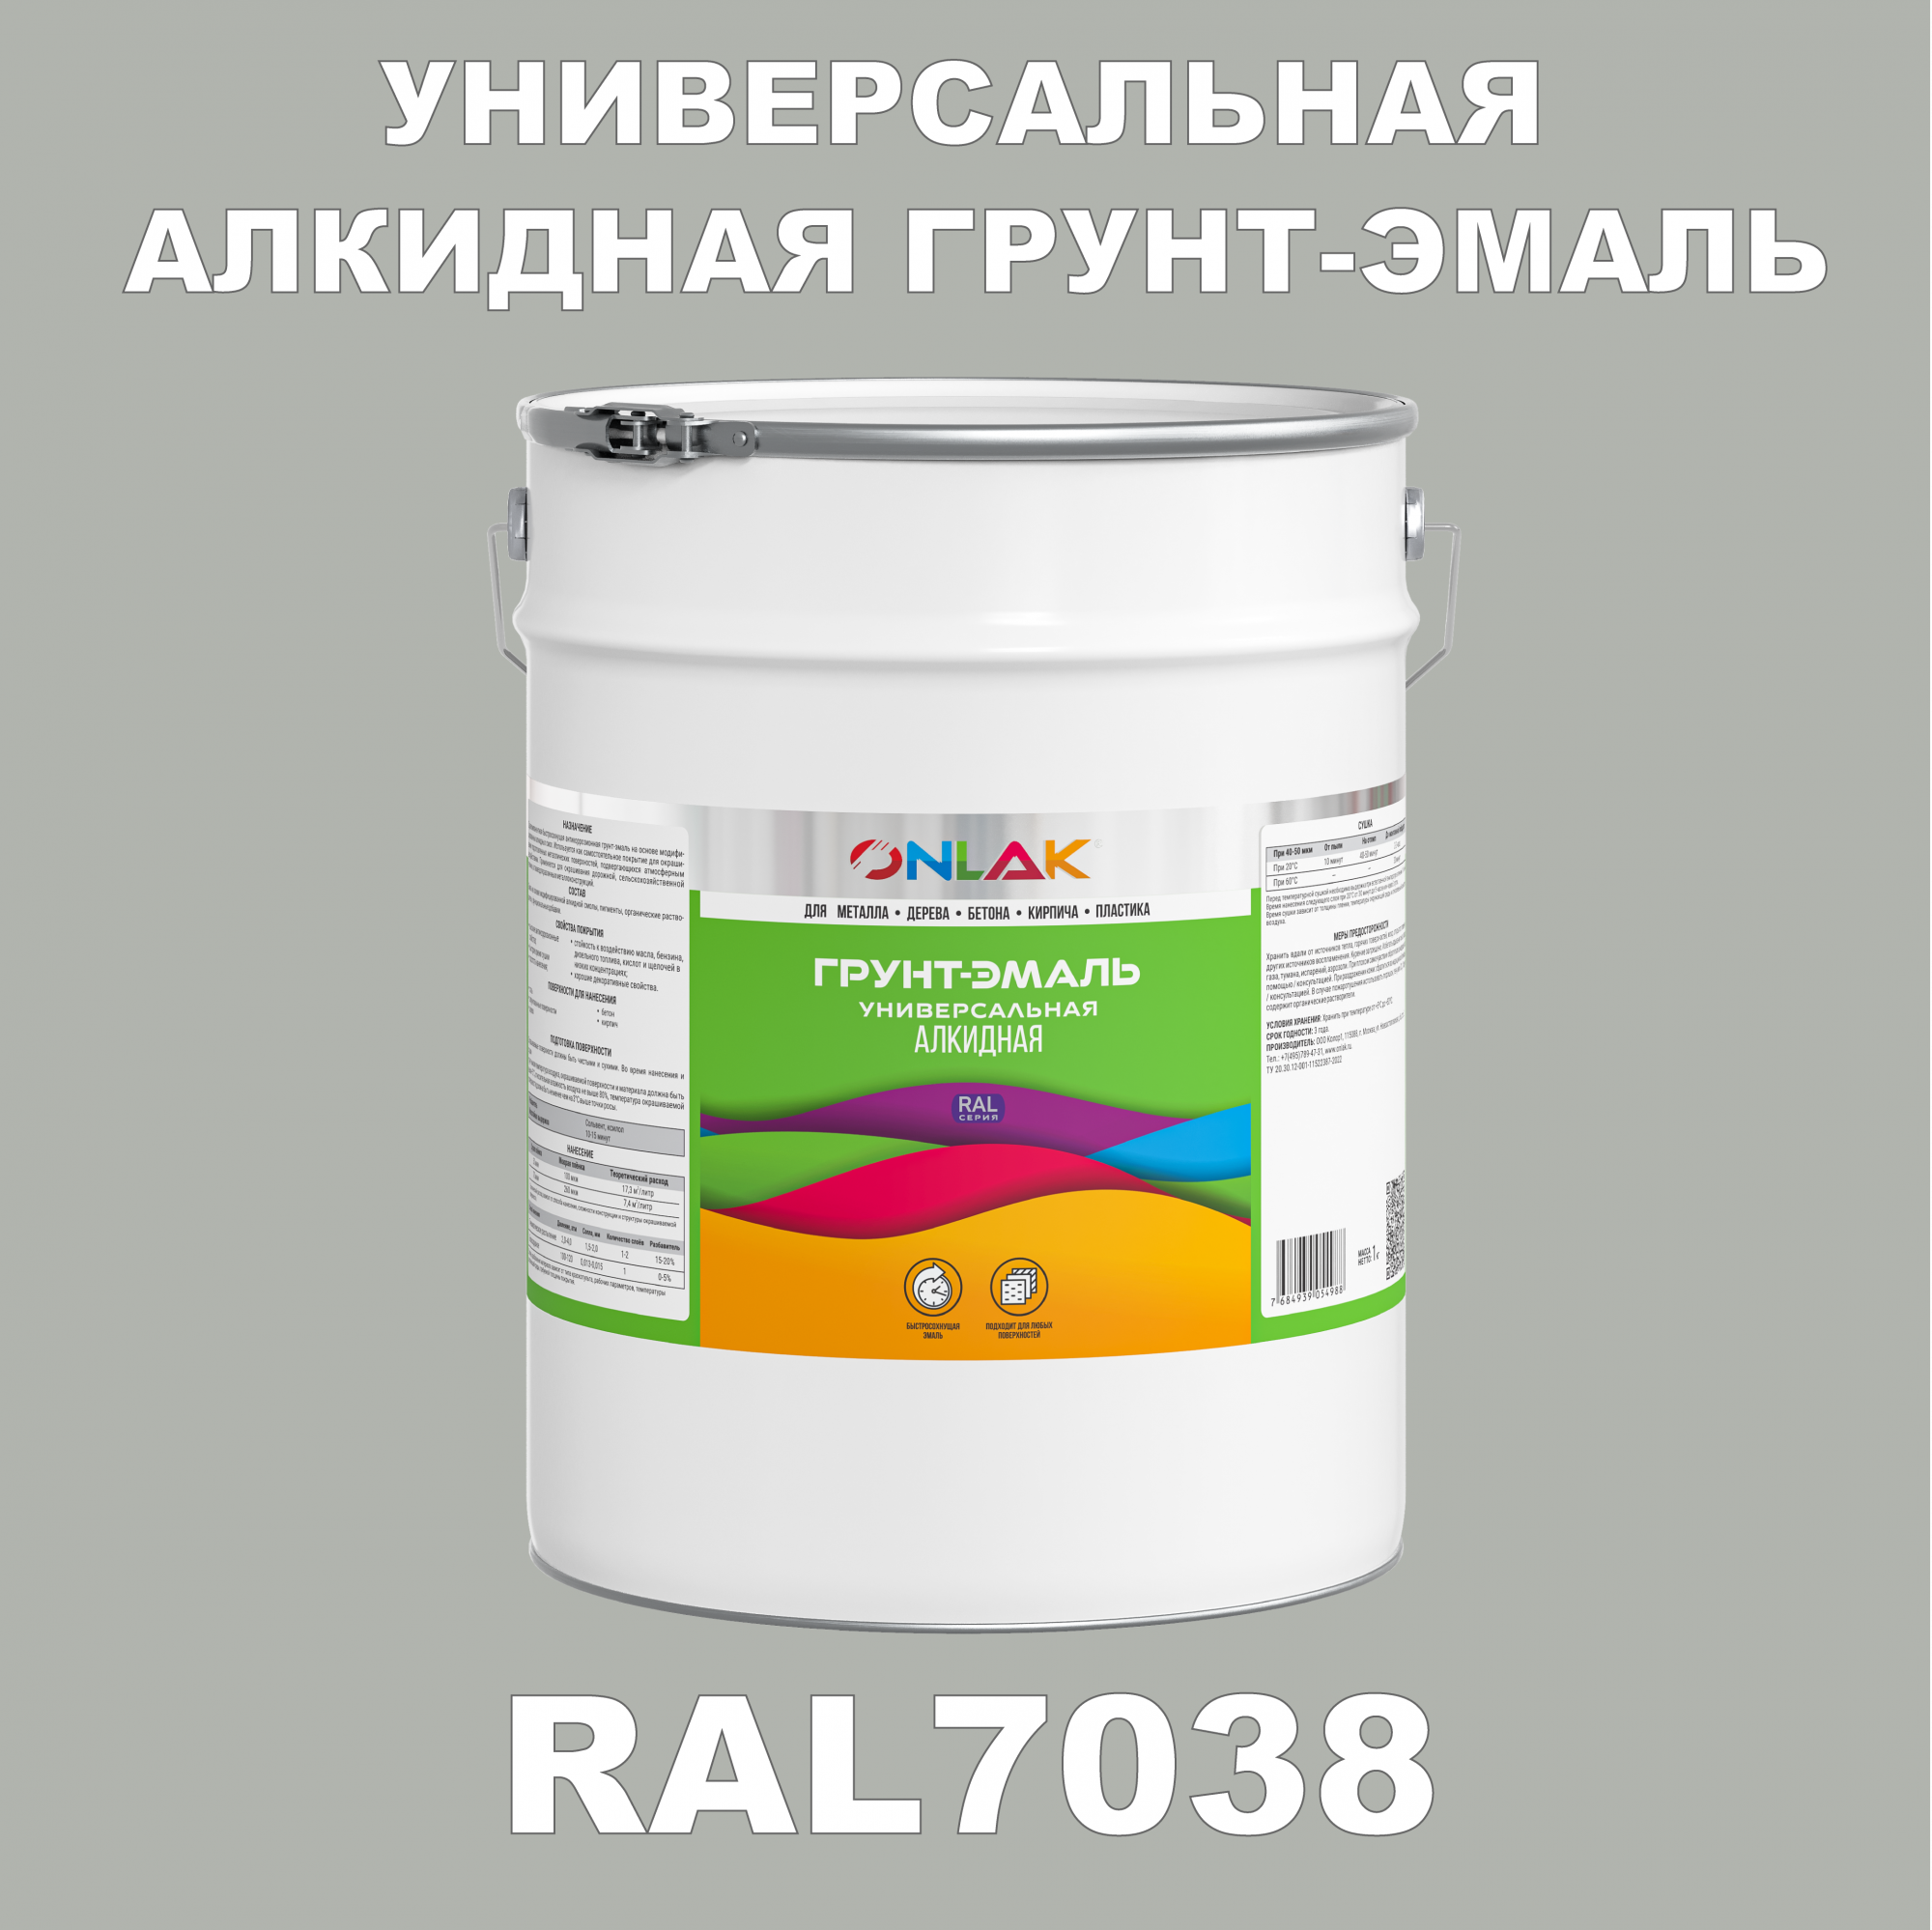 Грунт-эмаль ONLAK 1К RAL7038 антикоррозионная алкидная по металлу по ржавчине 20 кг грунт эмаль skladno по ржавчине алкидная желтая 1 8 кг